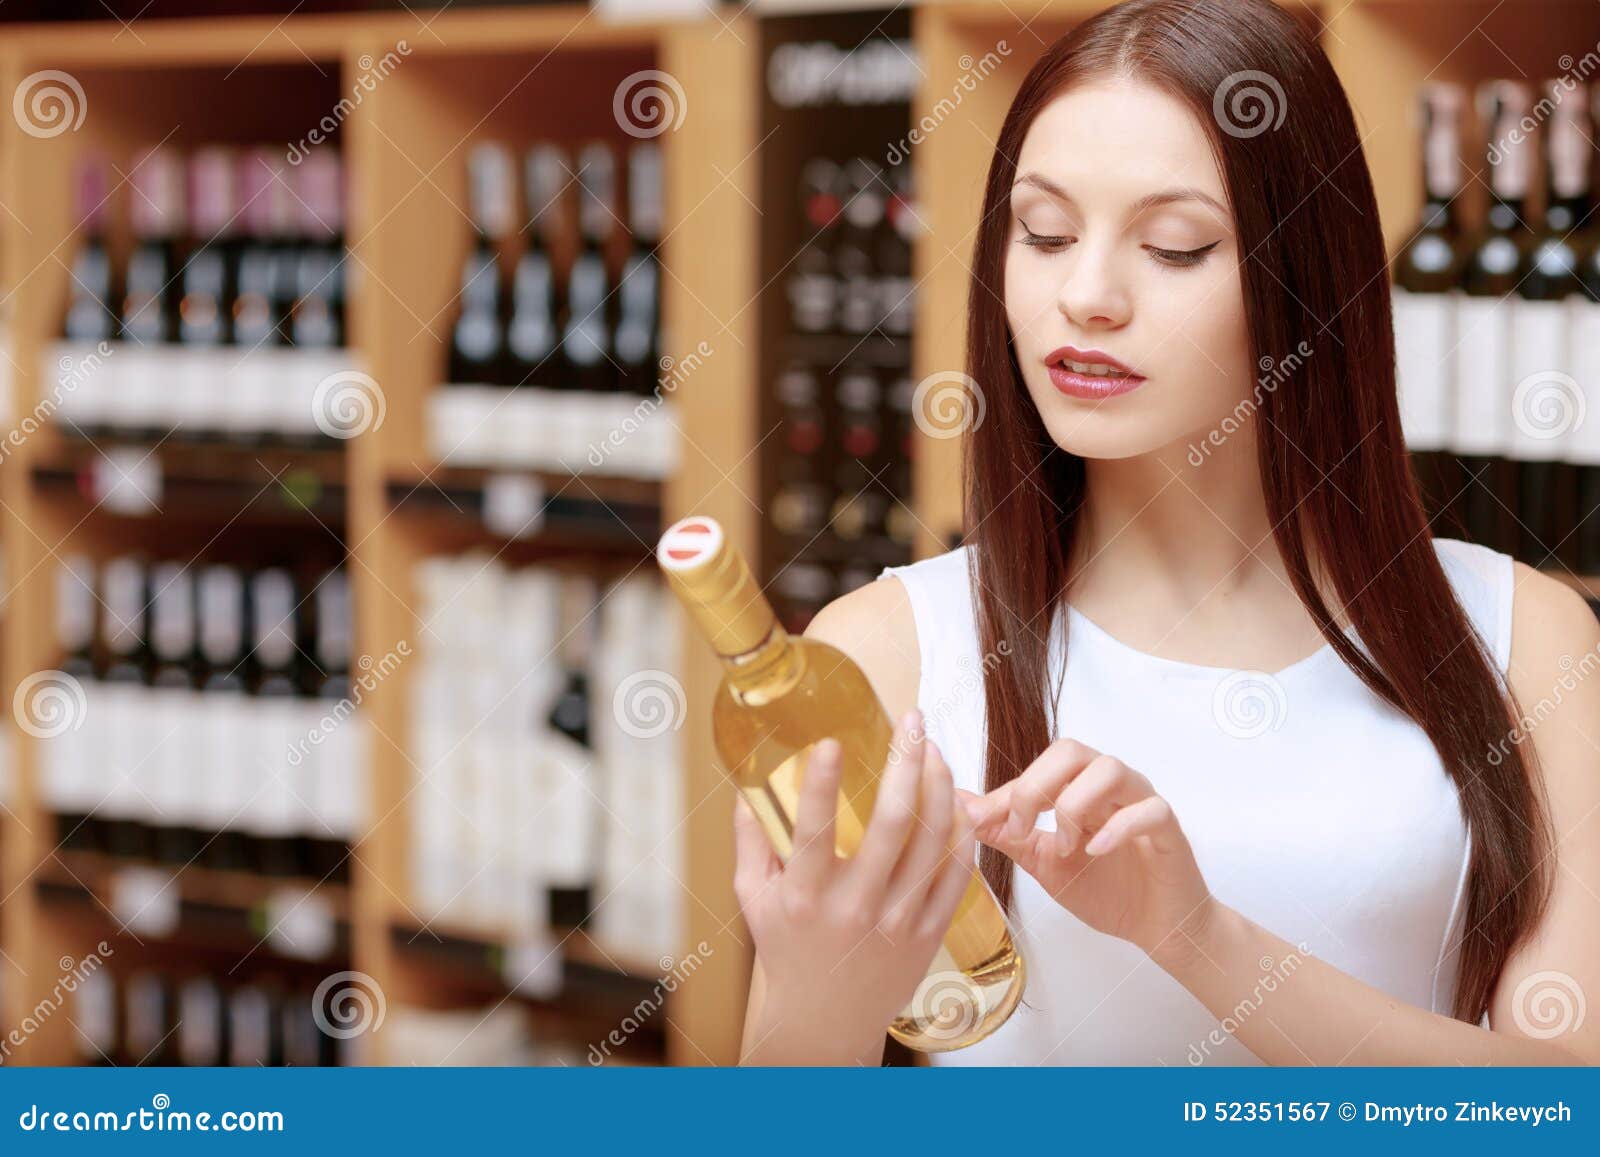 两个性感的女人笑着拿着一个酒瓶和一个礼品盒在粉红色的背景照片摄影图片_ID:350806509-Veer图库